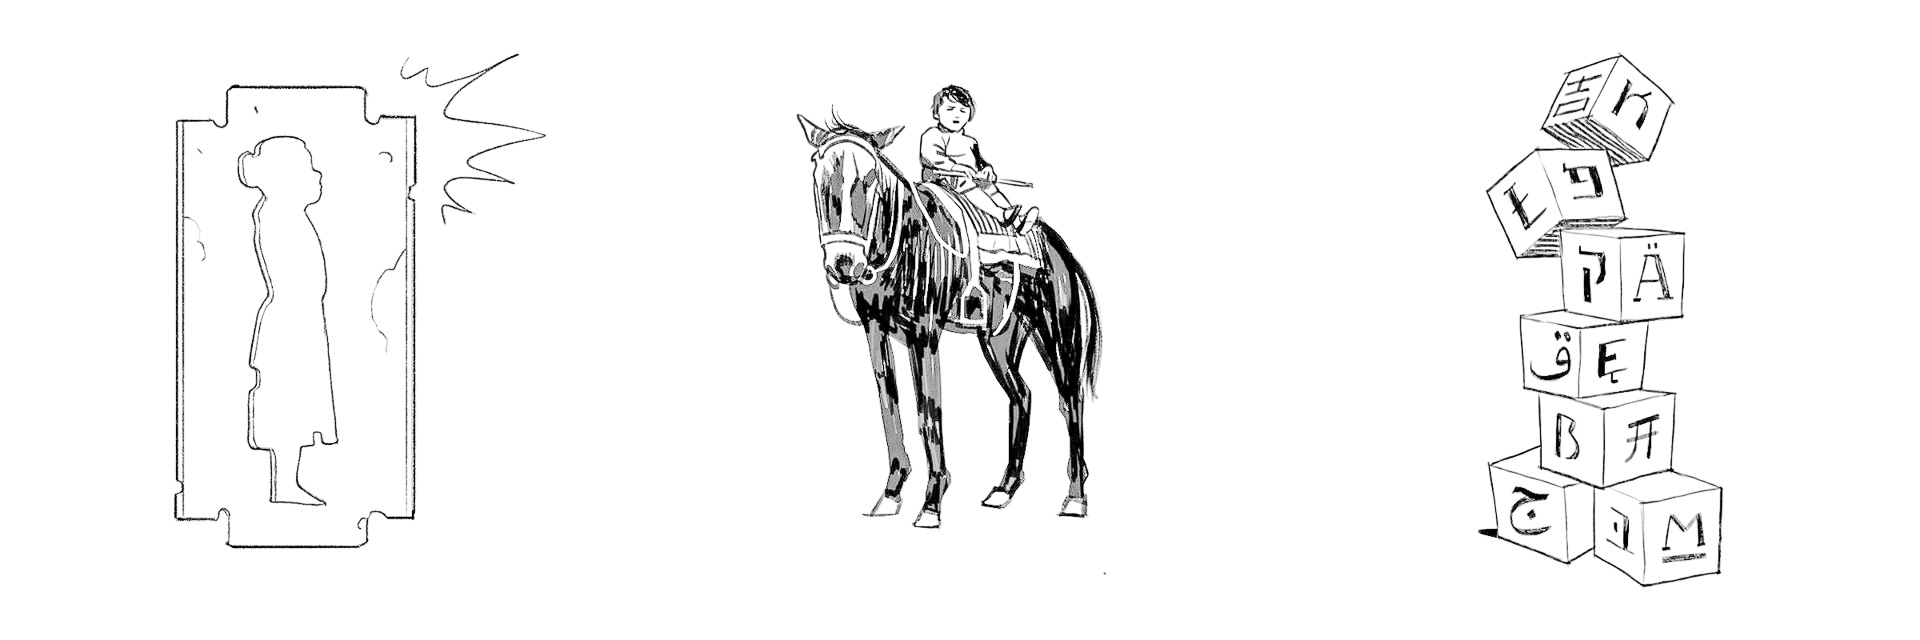 Illustration: zu sehen ist eine weibliche Figur in einer Rasierklinge, ein Kind of einem Pferd, sowie traditionelle hebräische Würfel aufeinander gestapelt.